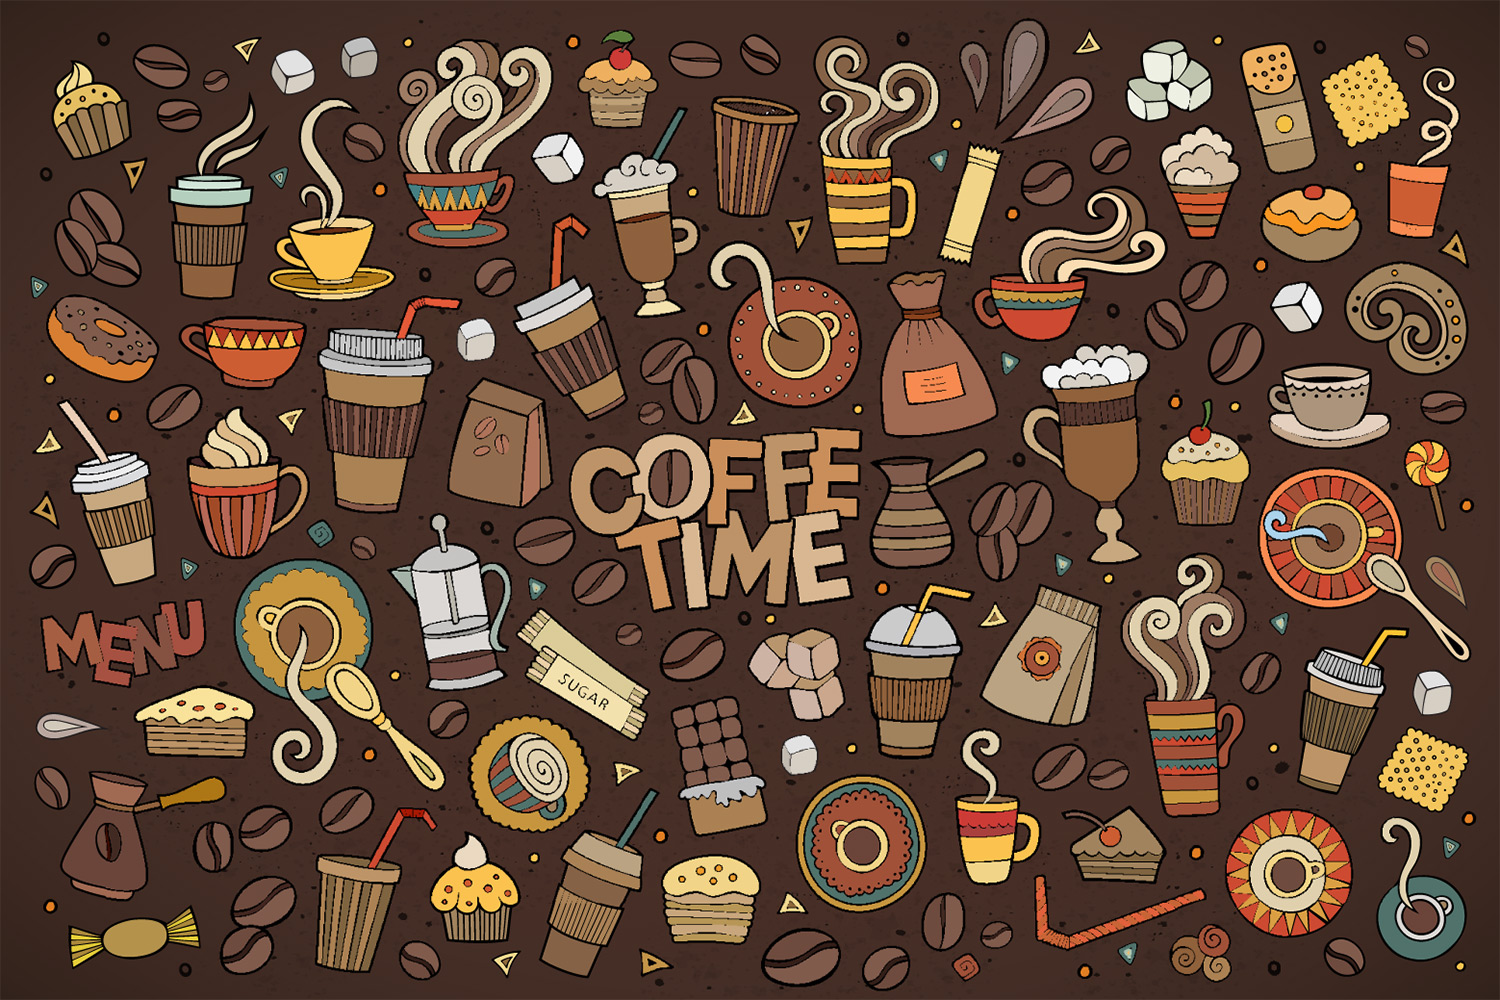 cafe wallpaper designs,pattern,illustration,font,art,design